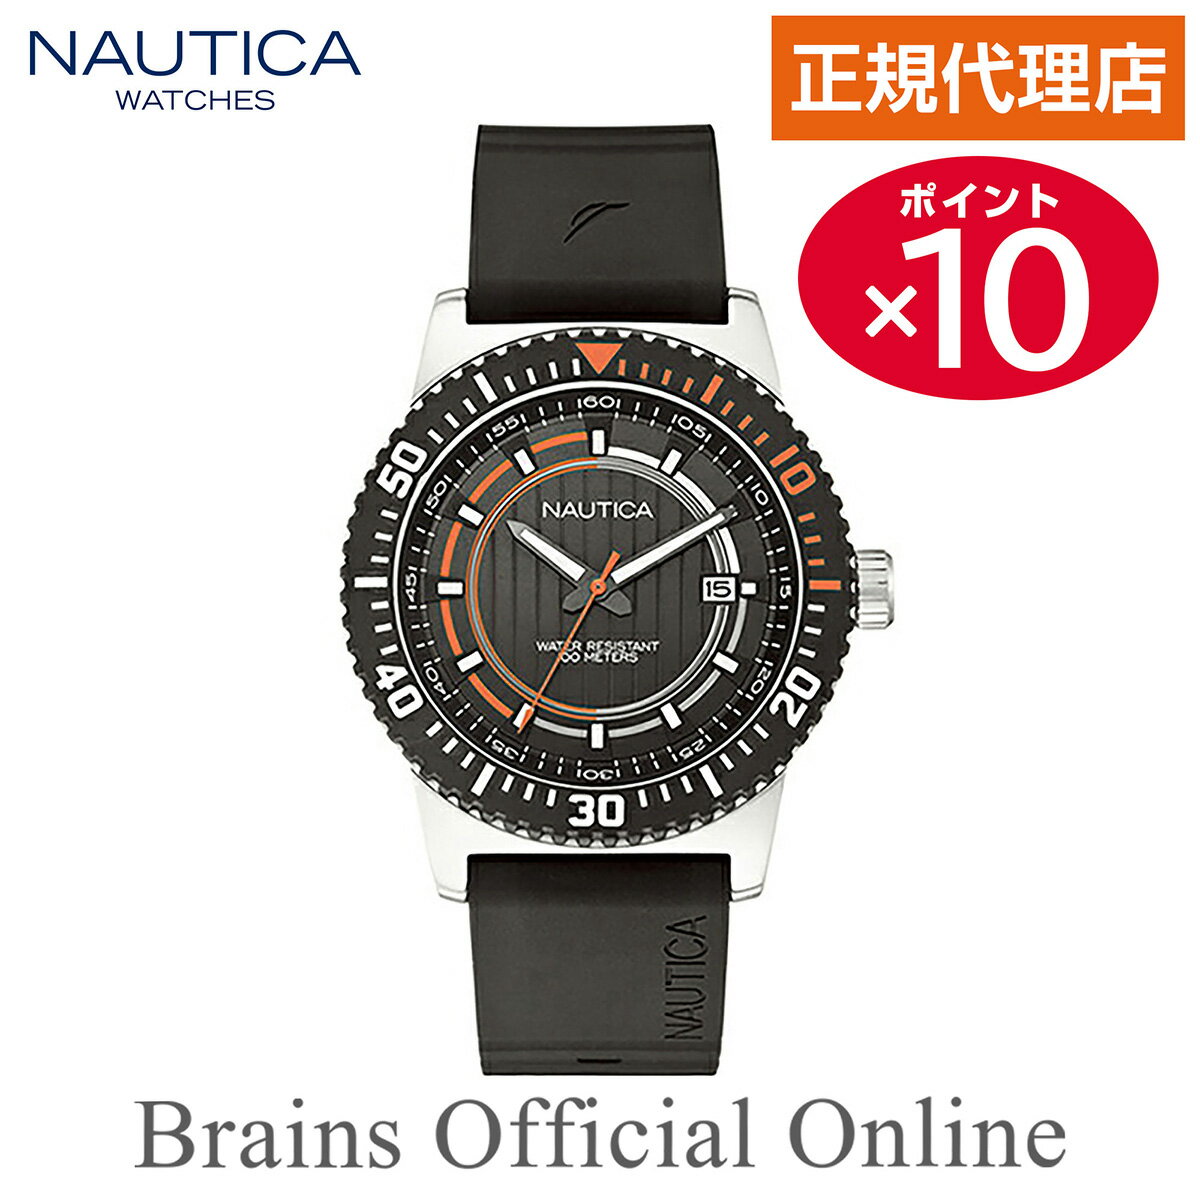 【公式特典ポイント10倍】 正規代理店 ノーティカ NAUTICA NST16 DATE デイト ウォッチ A12637G メンズ クオーツ ブランド 腕時計